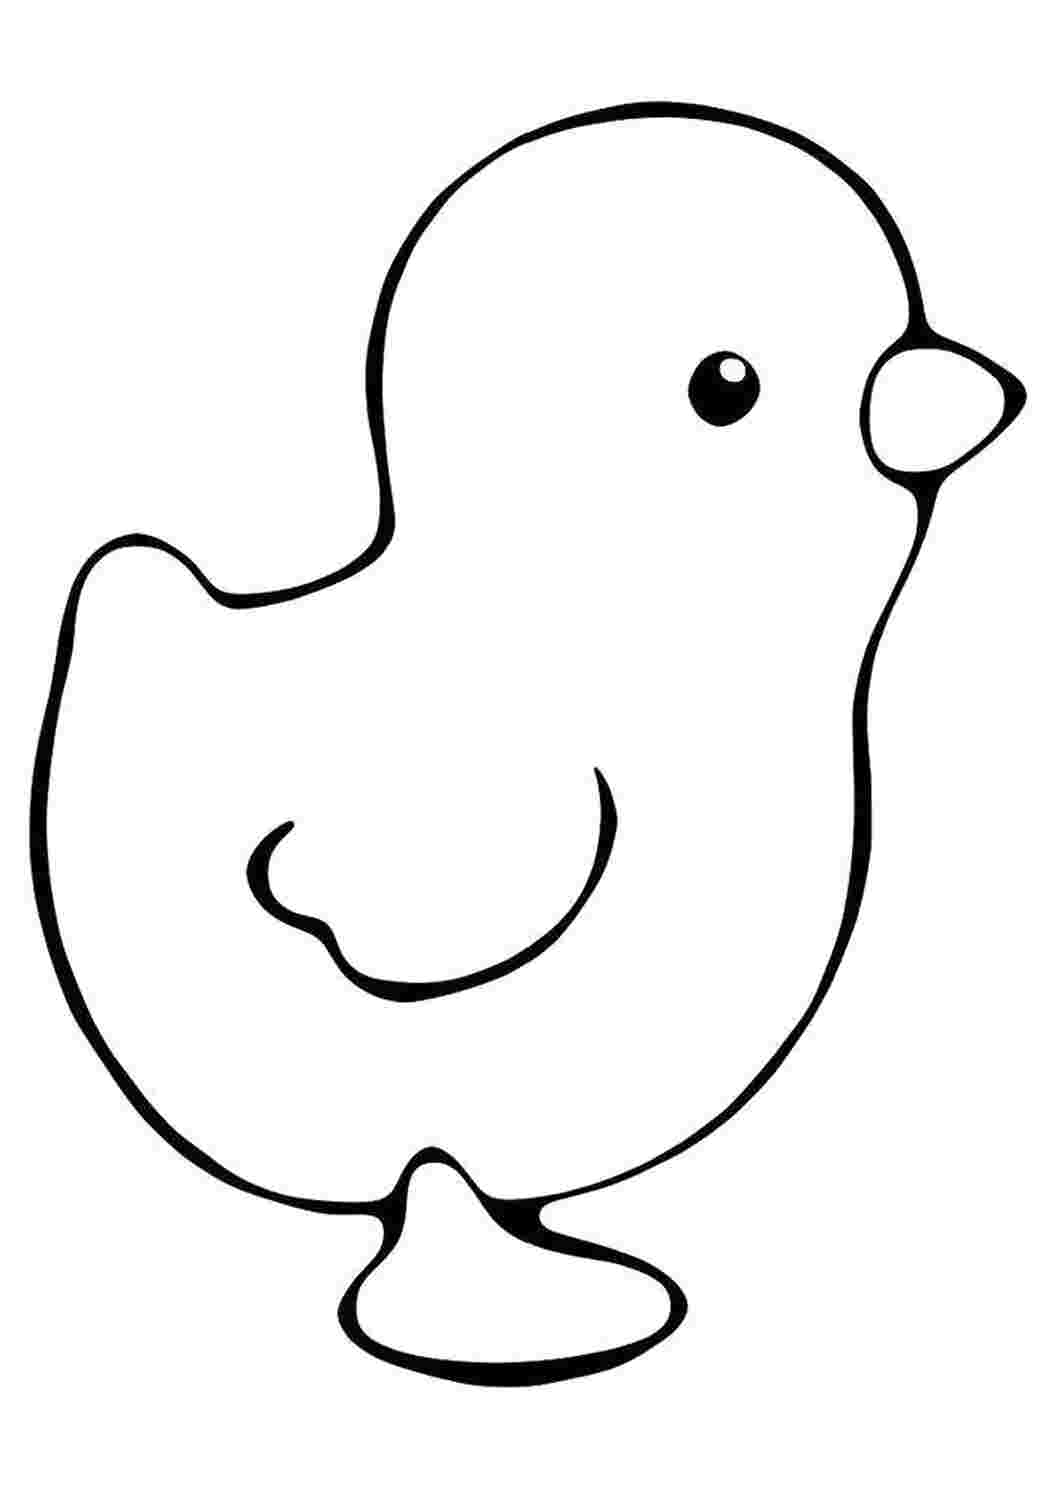 Раскраски раскраски для детей по сказкам маленький цыпленок держит в крыле колосок